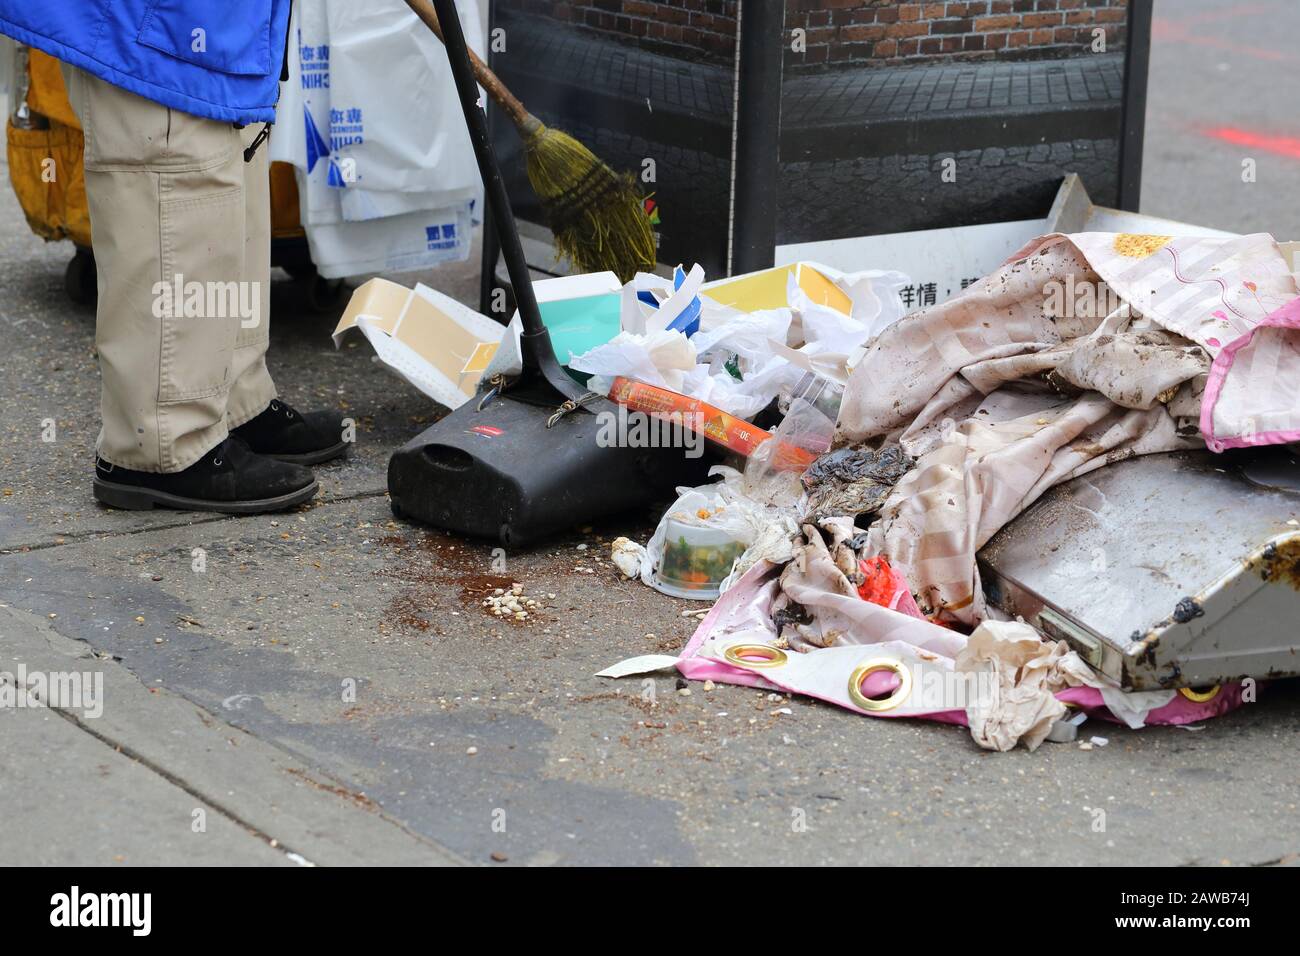 Eine Person mit einem Besen und einer Staubpfanne, die Müll aufräumt, wurde an einer Straßenecke in New York City verschüttet Stockfoto